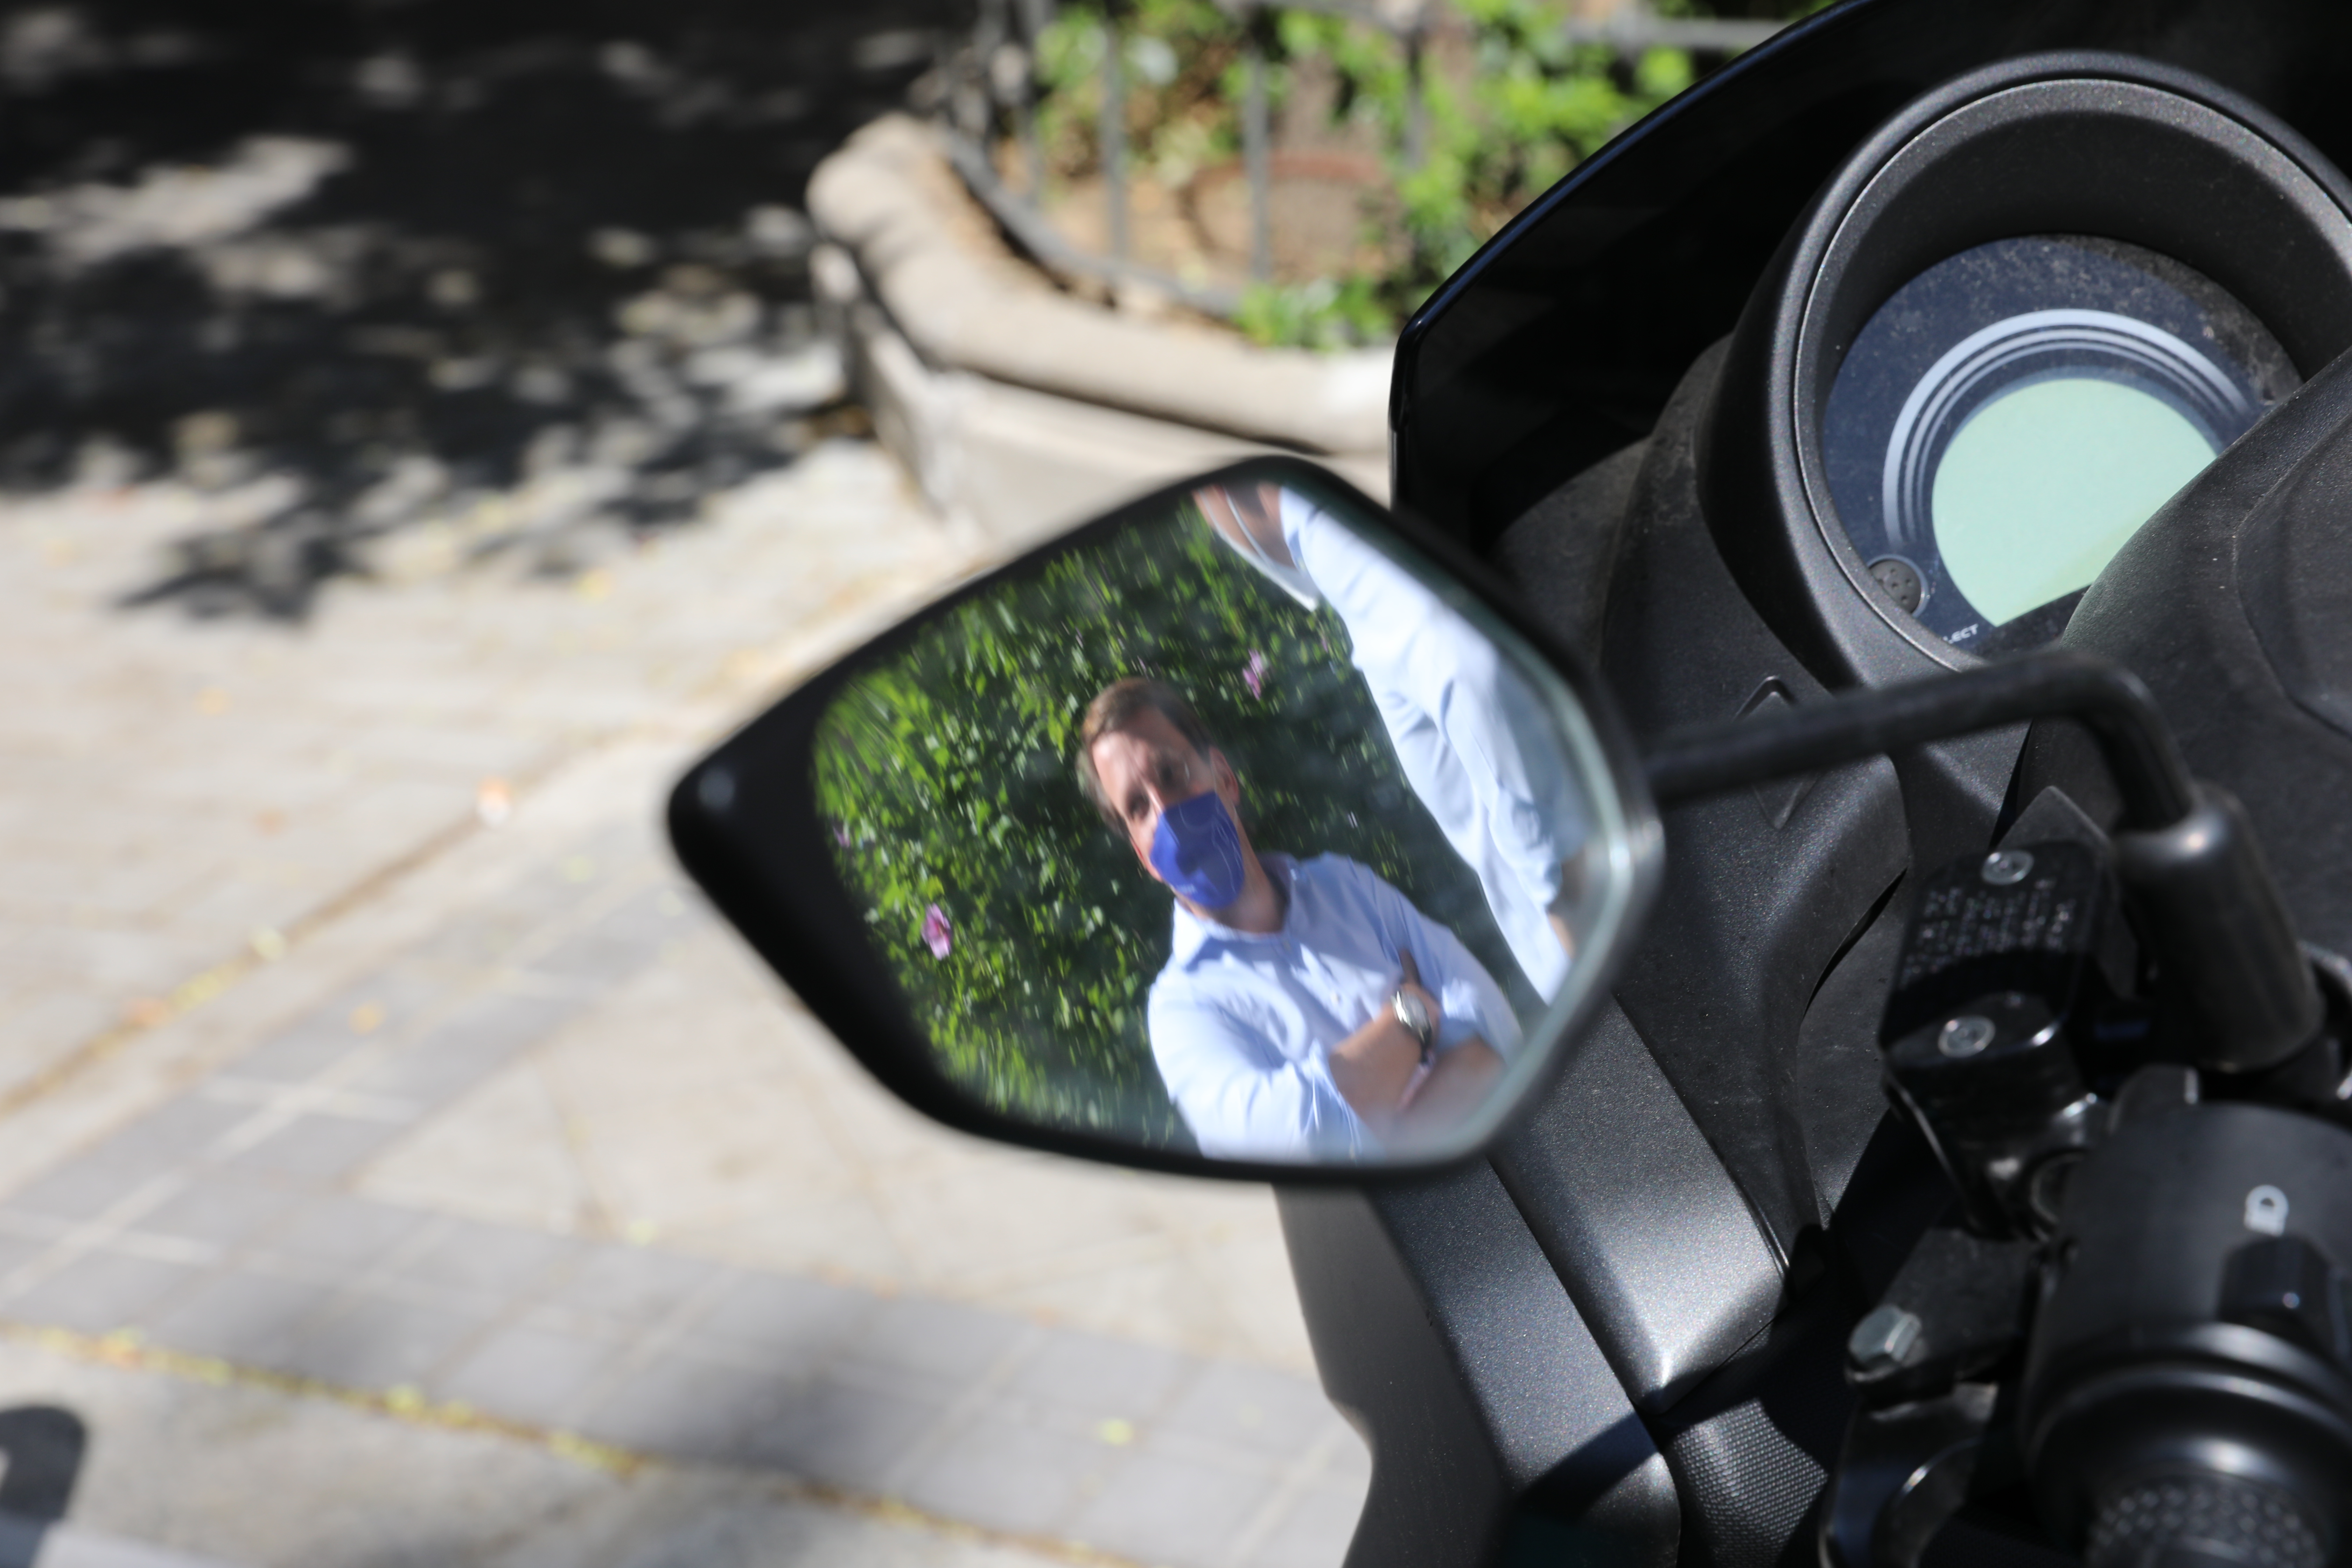 Imagen de Almeida en un espejo retrovisor de una moto